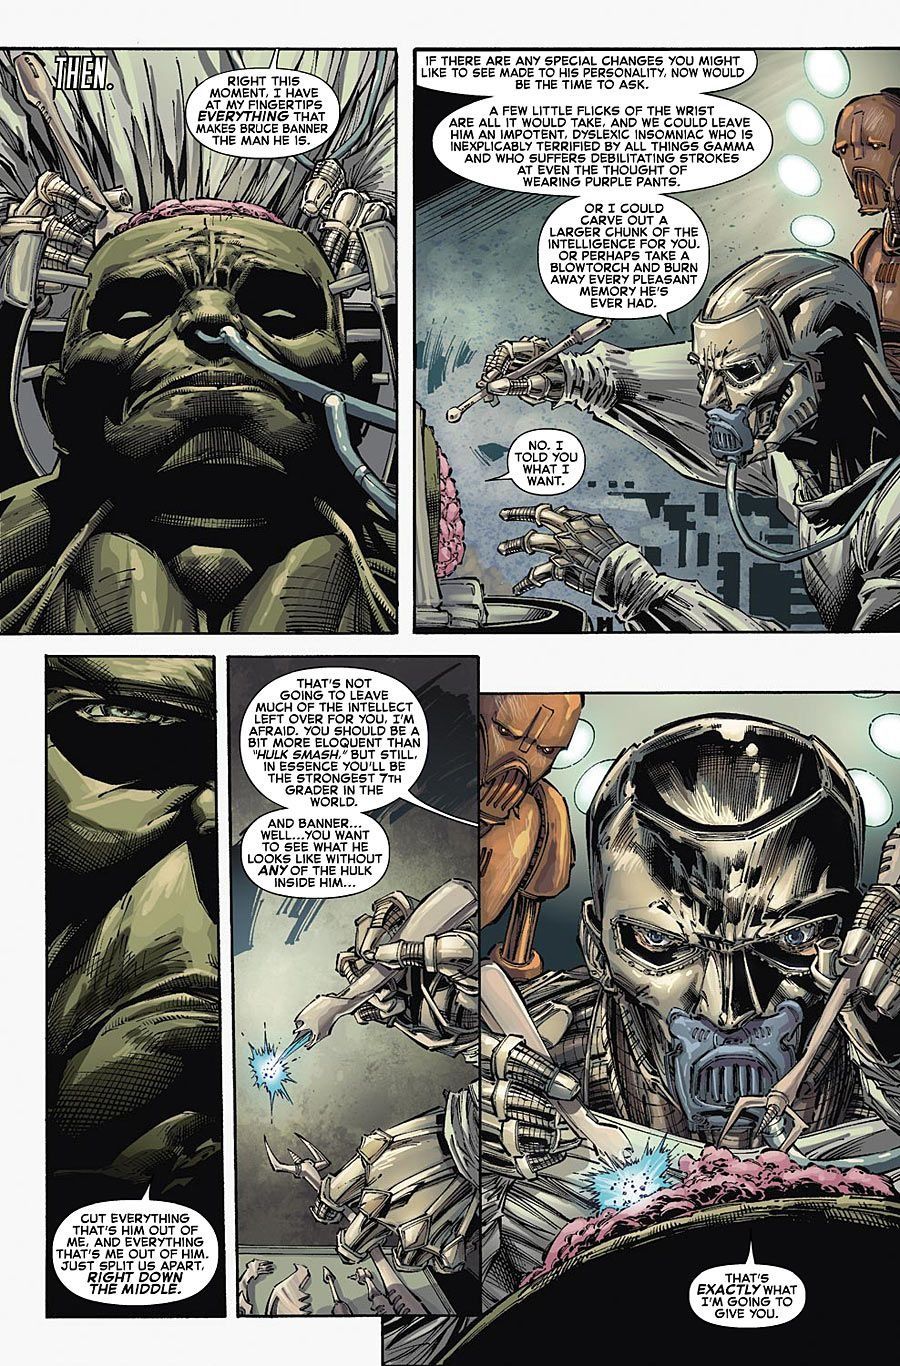 Doctor Doom split Banner and the Hulk